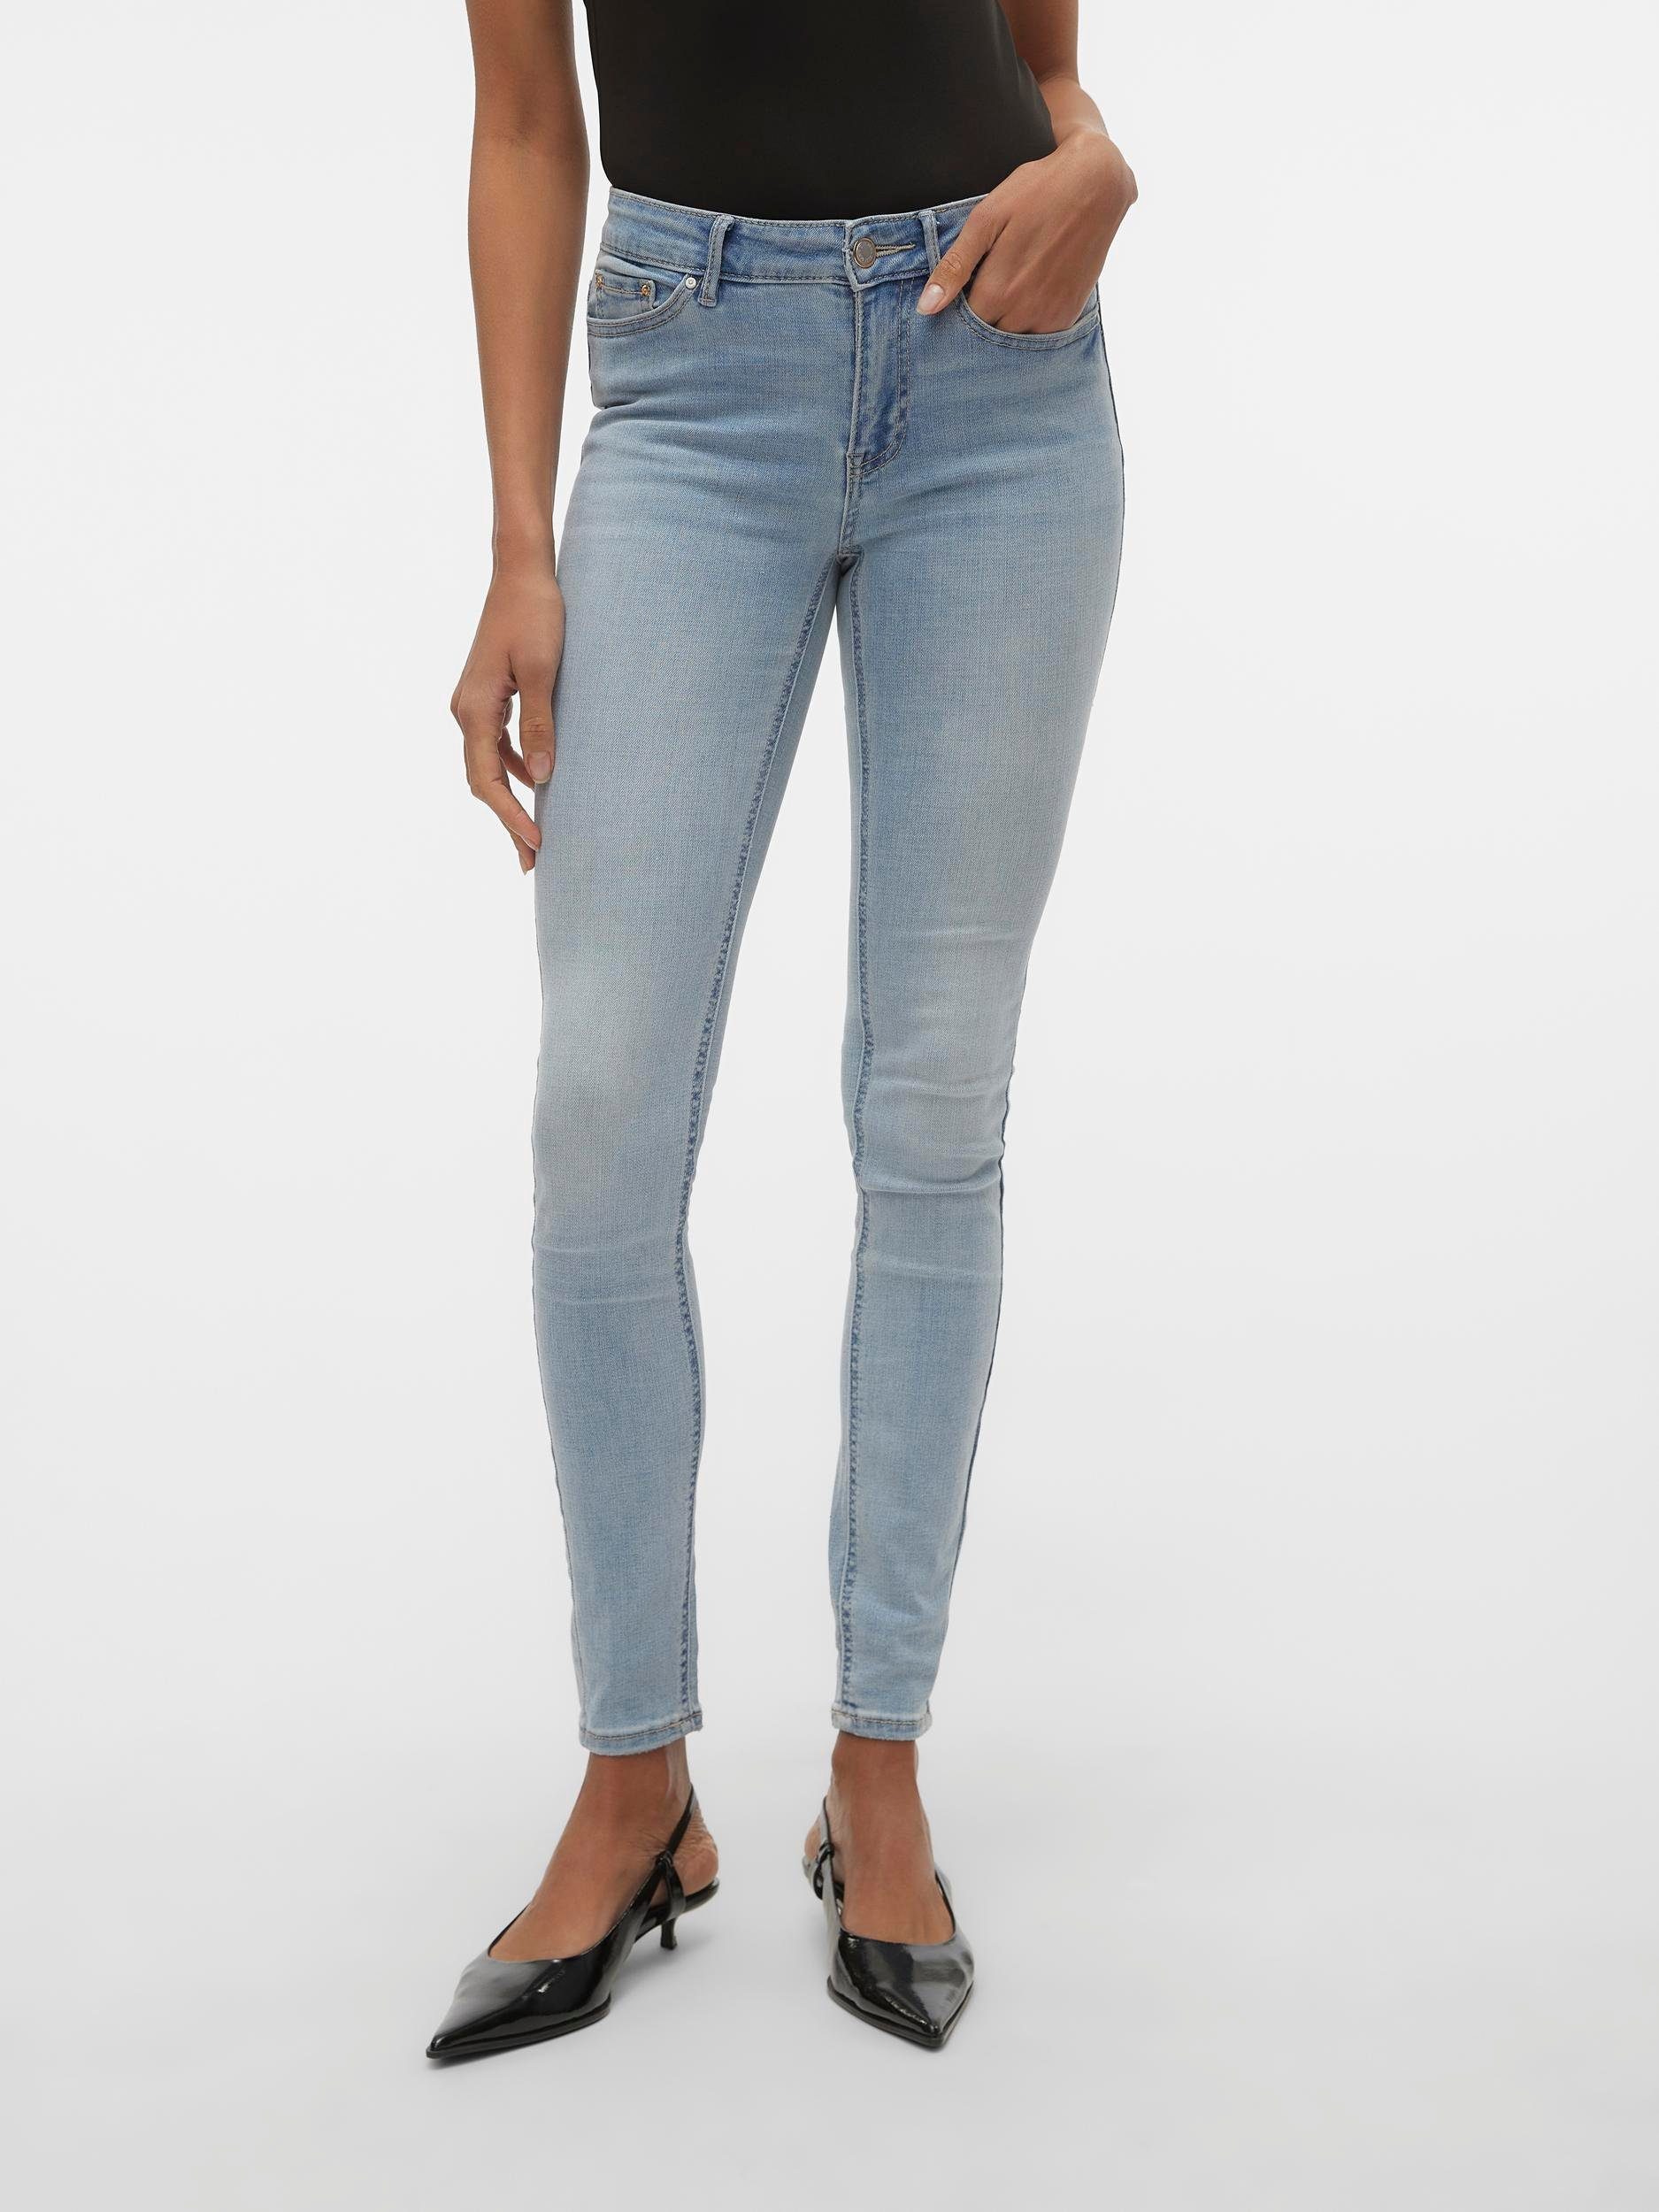 Vero Moda Skinny fit jeans VMFLASH MR SKINNY JEANS LI3102 GA NOOS